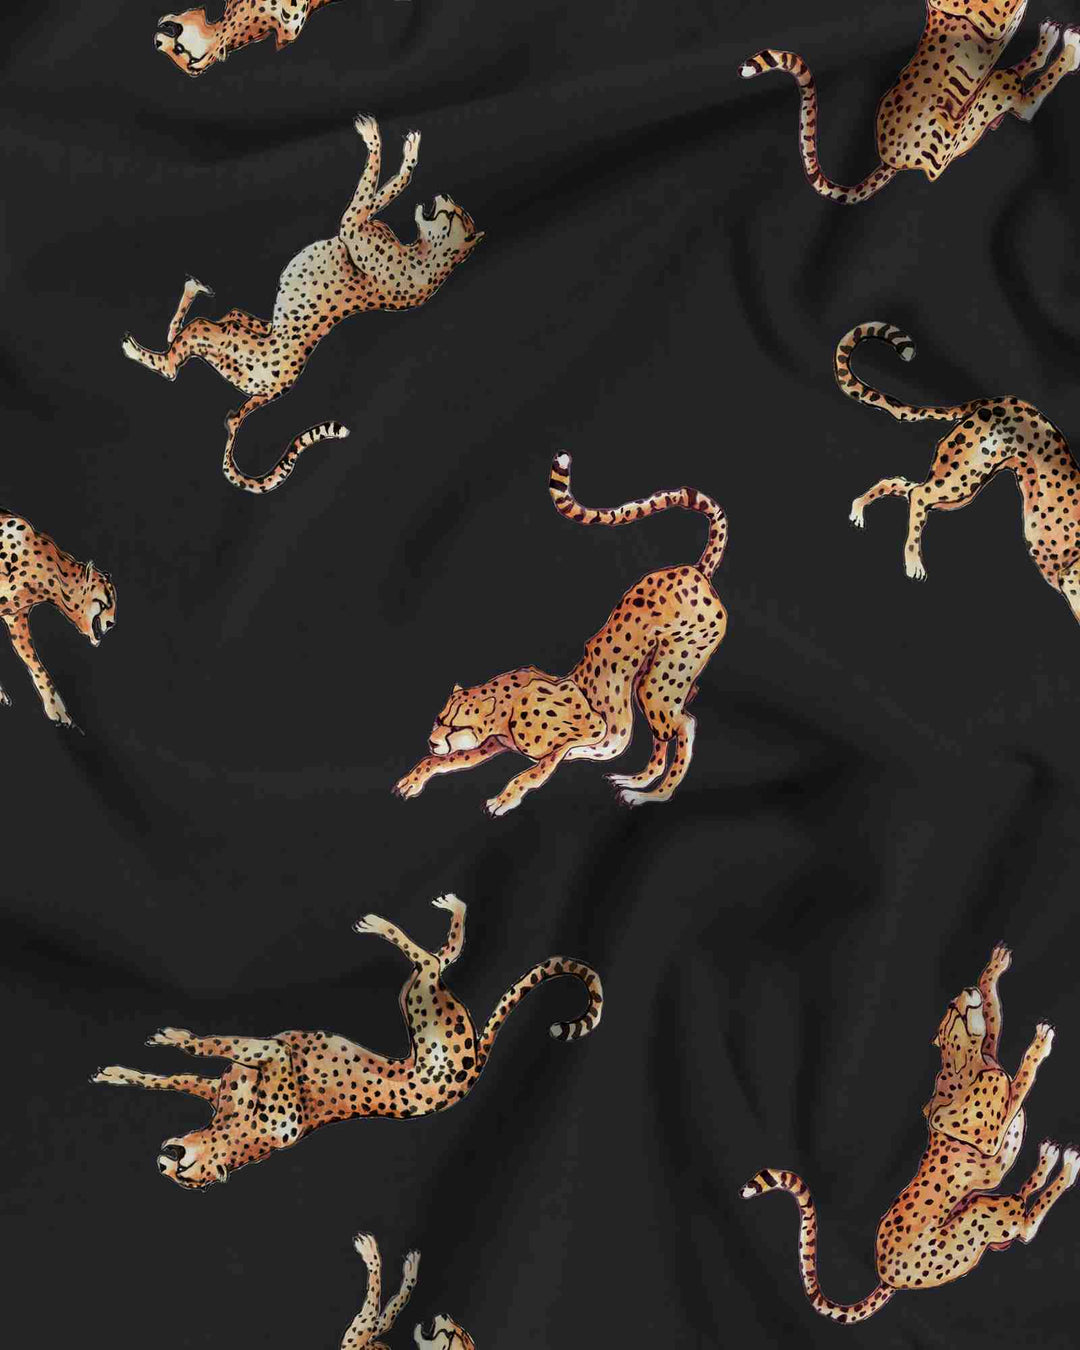 Mens black pyjamas set with jumping cheetahs